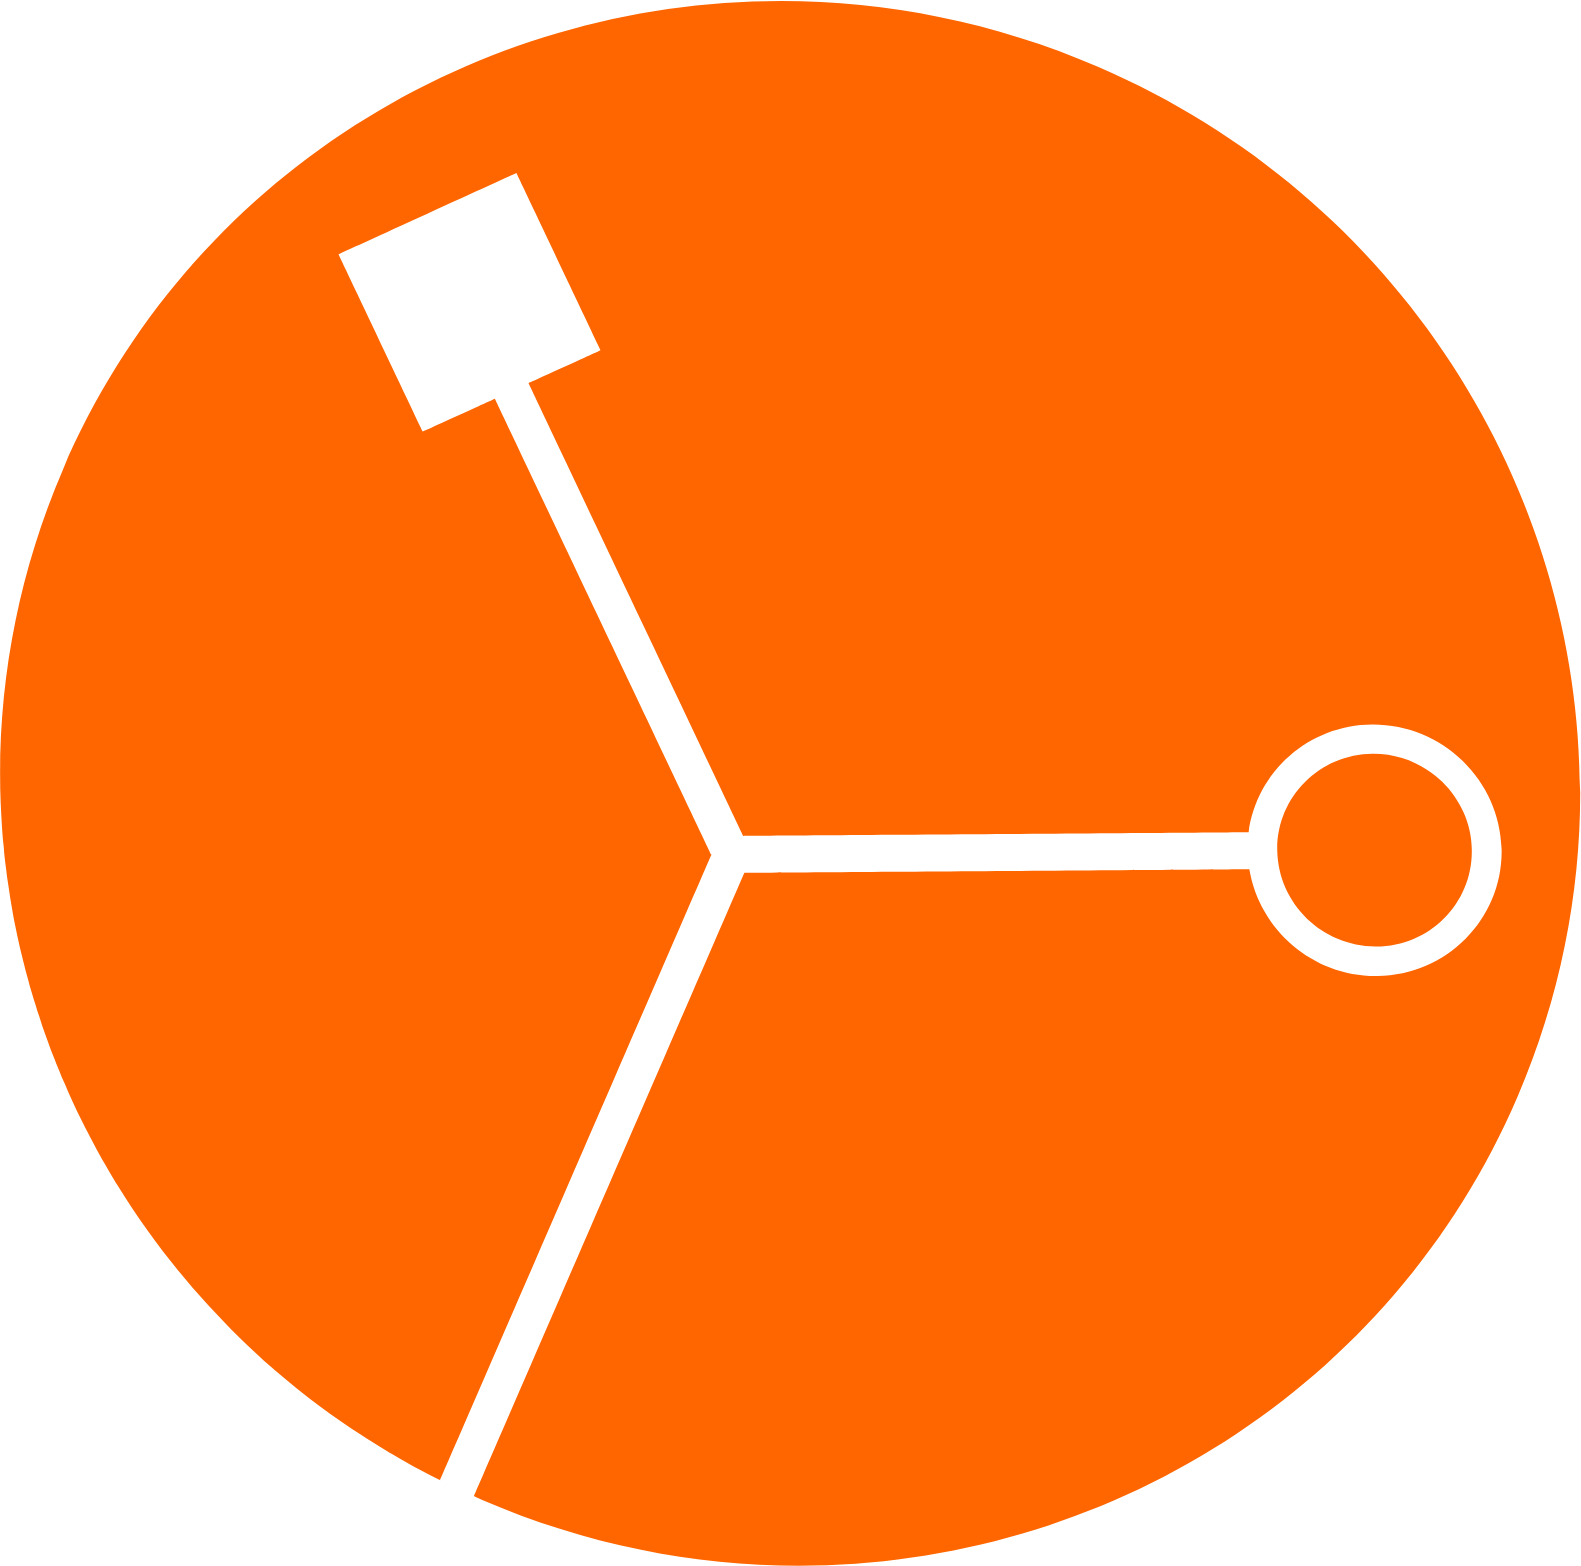 Exscientia logo (PNG transparent)